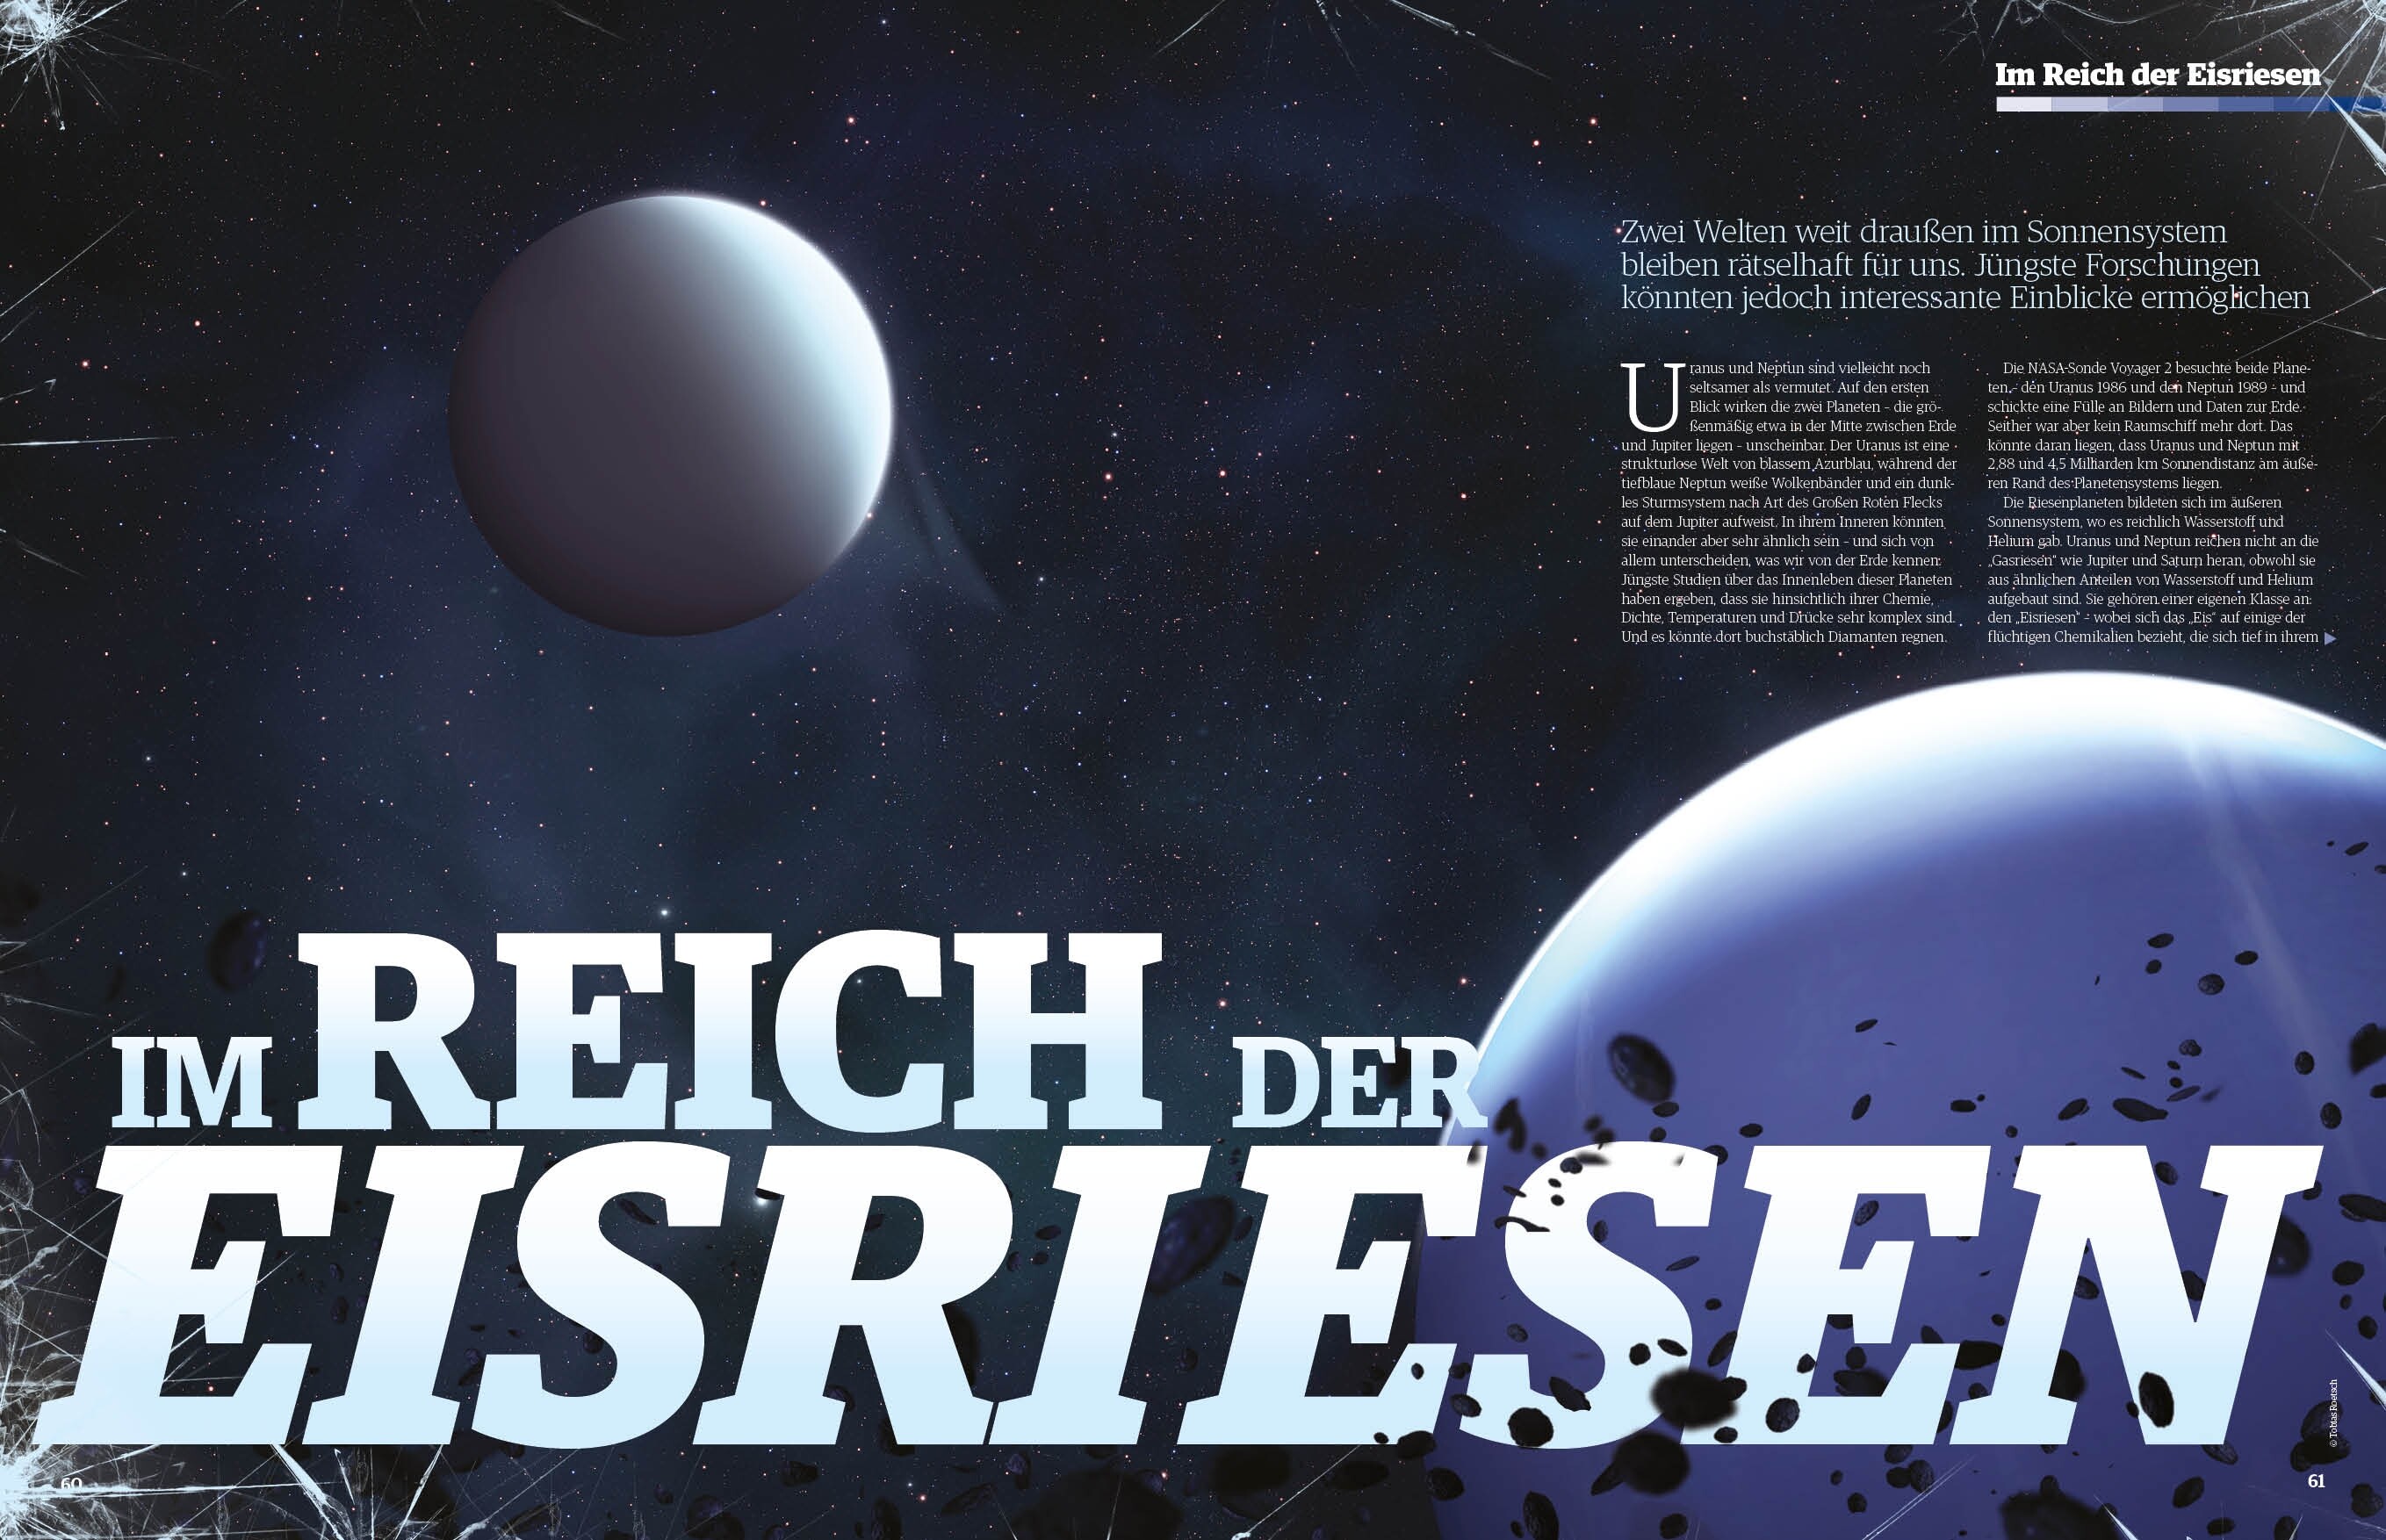 Space Weltraum Magazin 2/2018